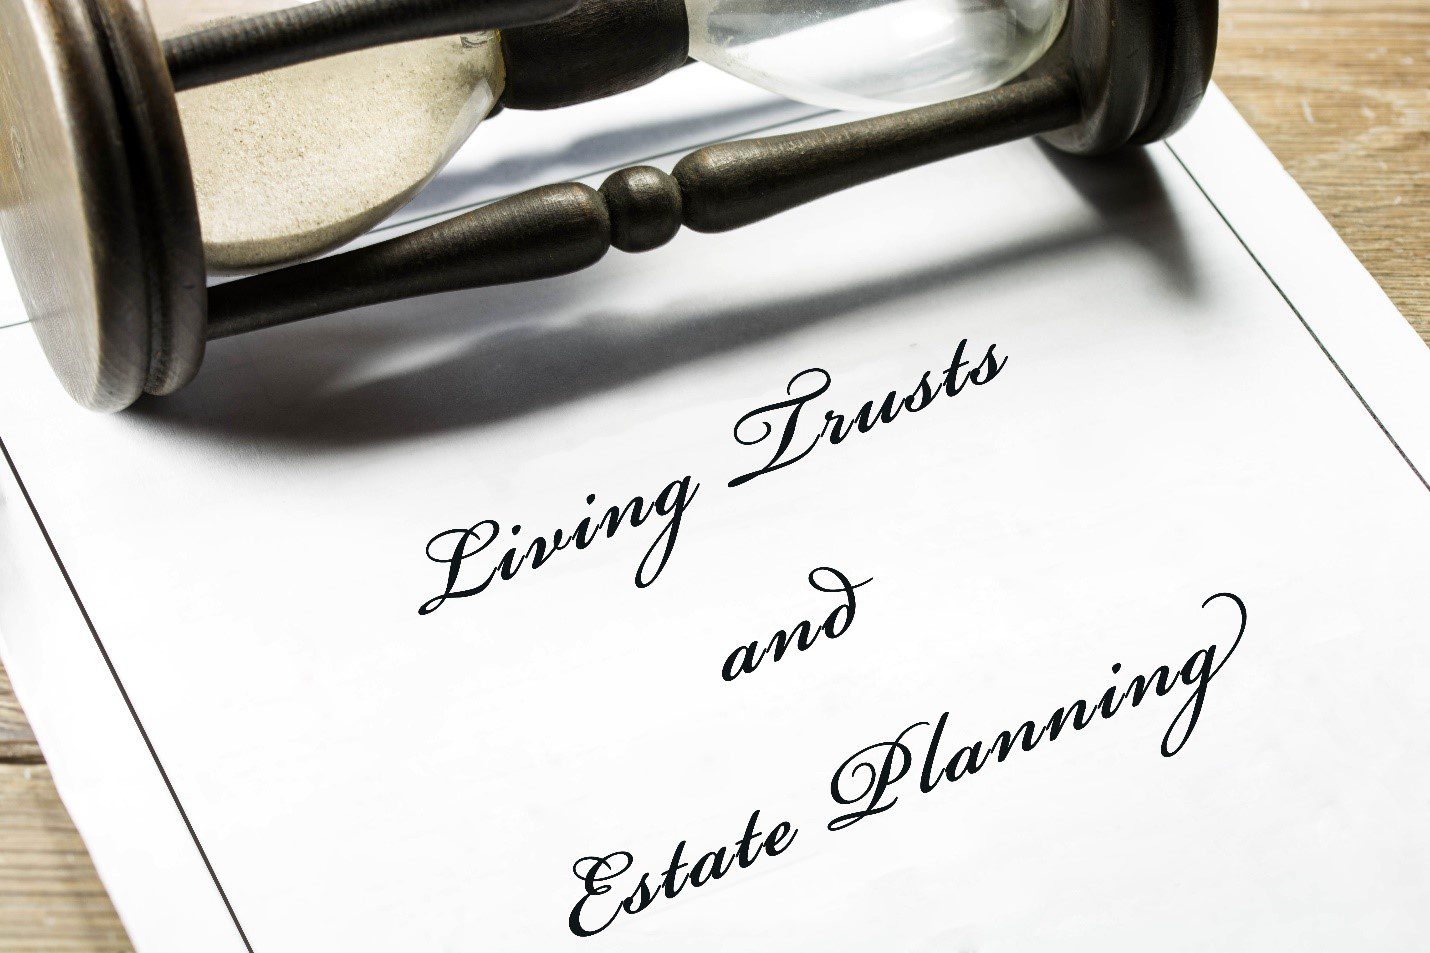 Living Trust & Estate Planning document